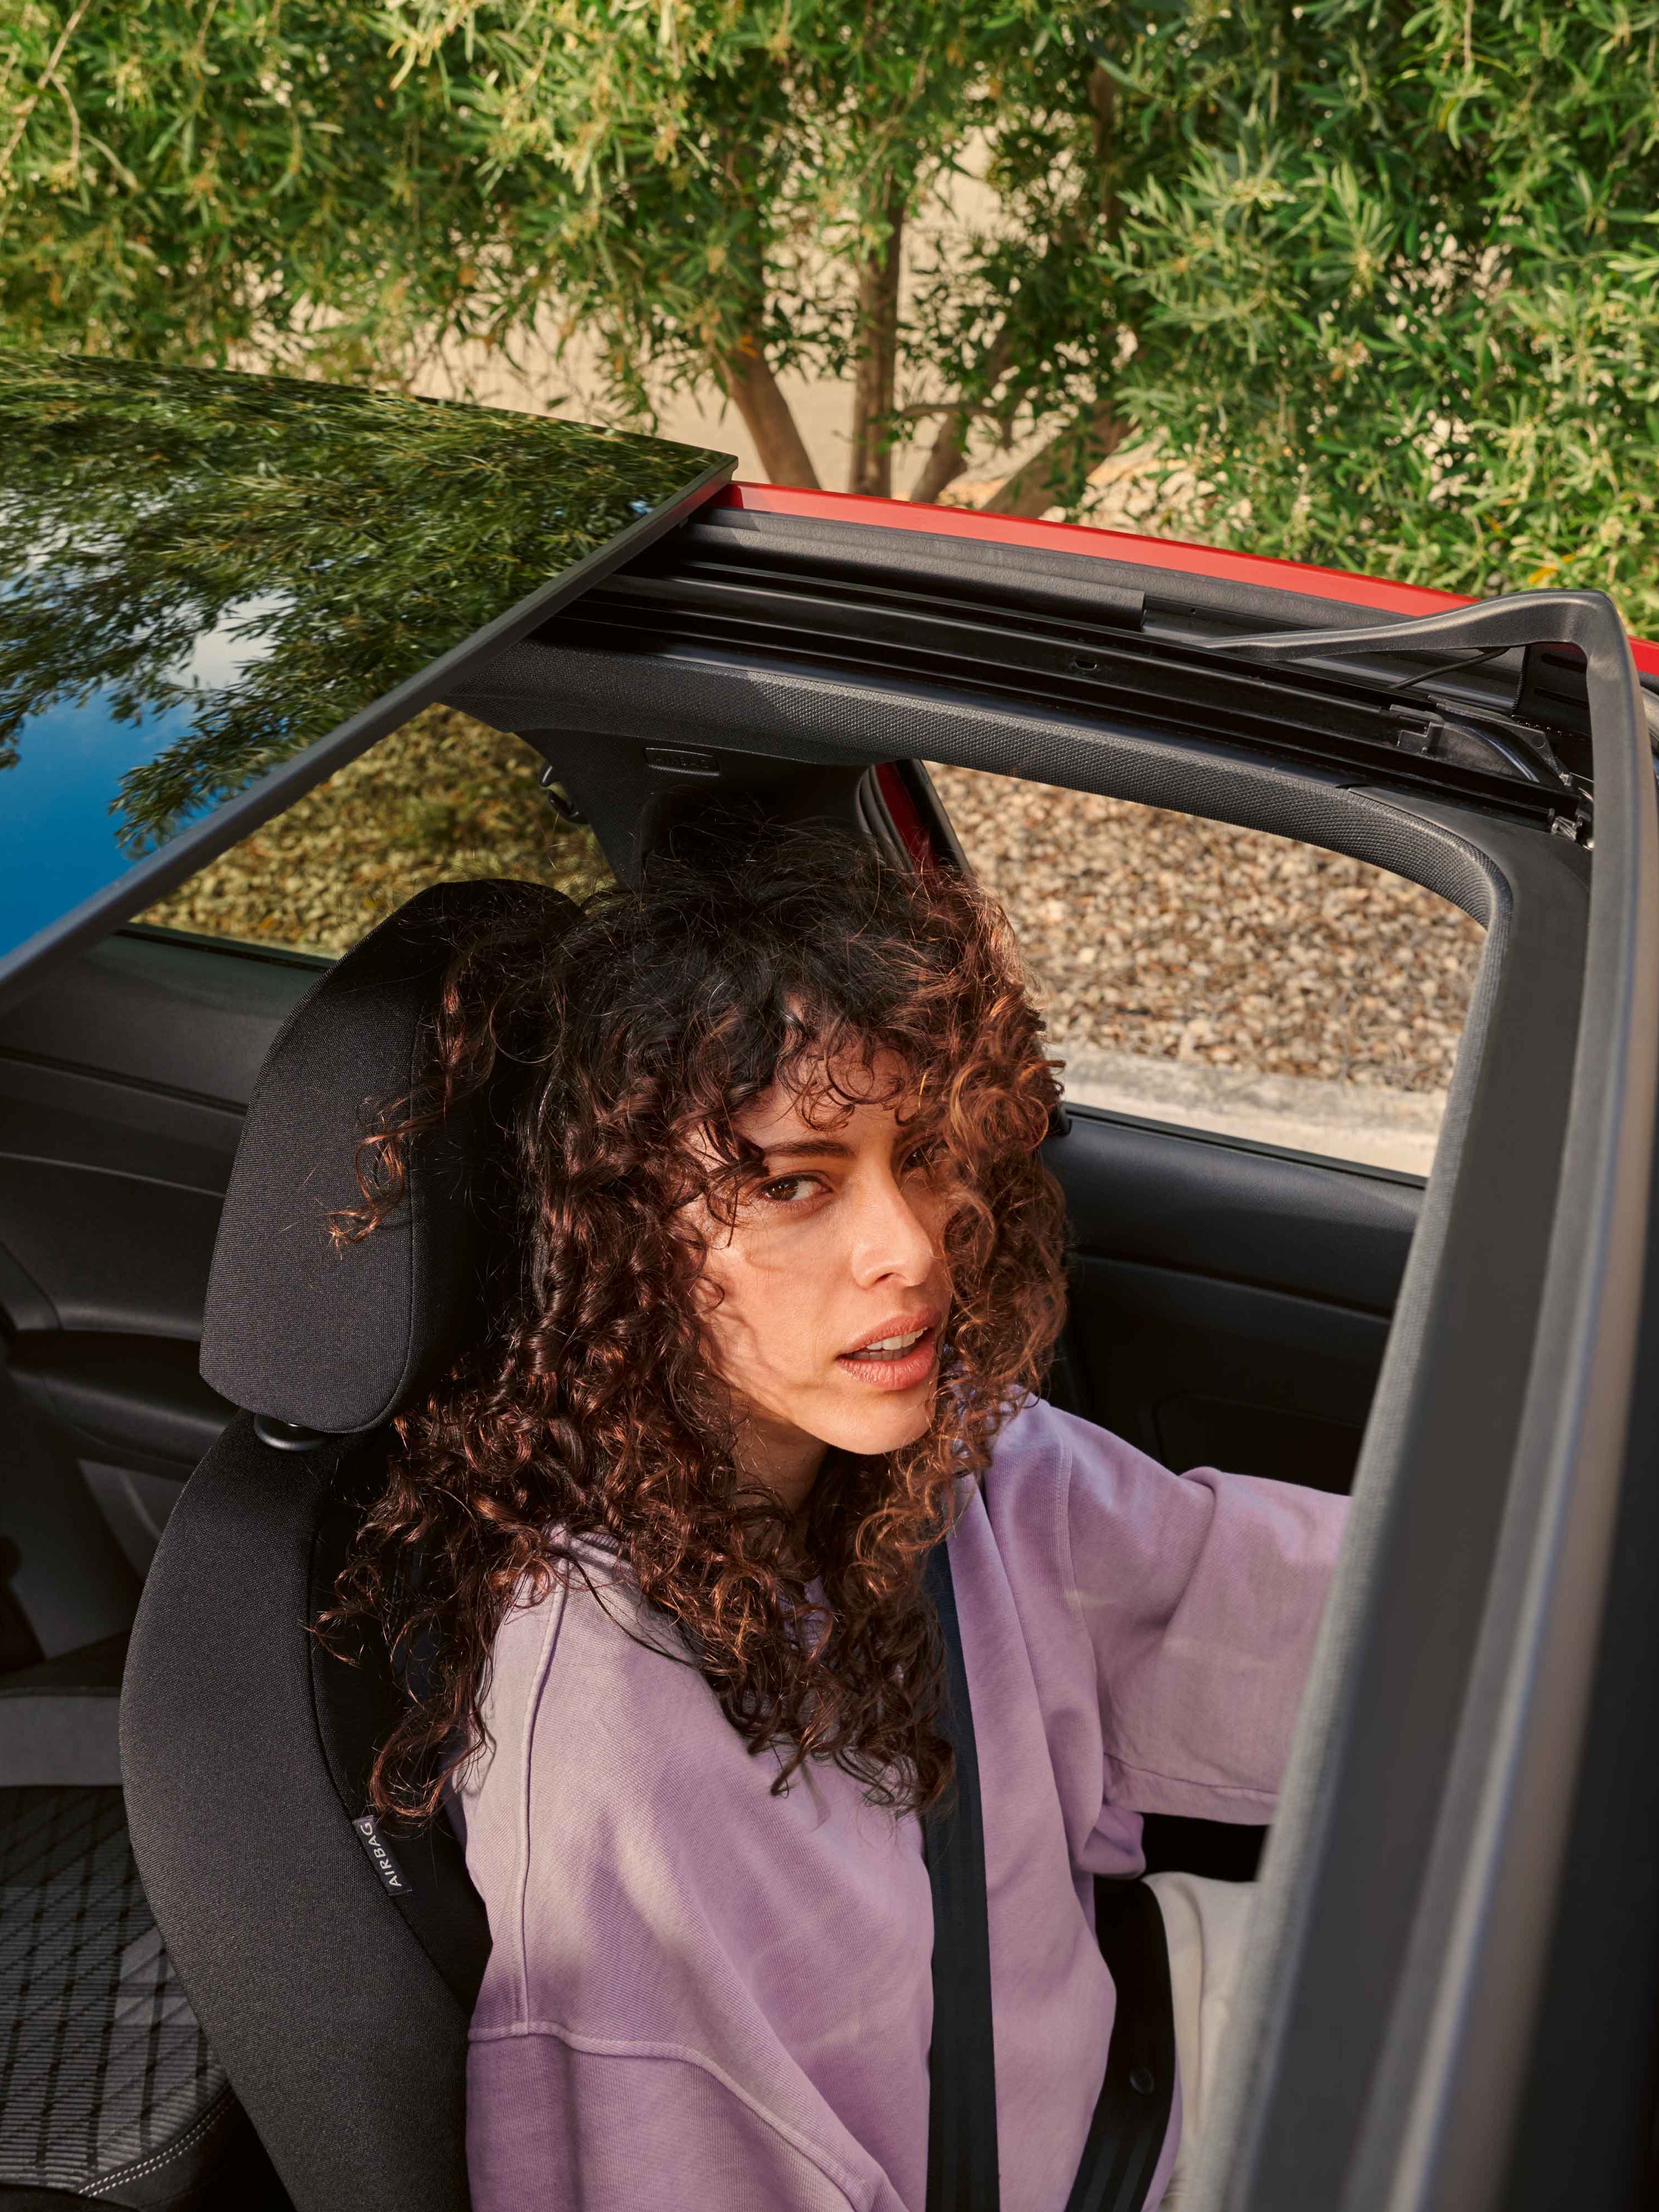 Blick von oben durch das Panoramadach des VW Taigo in dem eine Frau am Fahrersitz sitzt